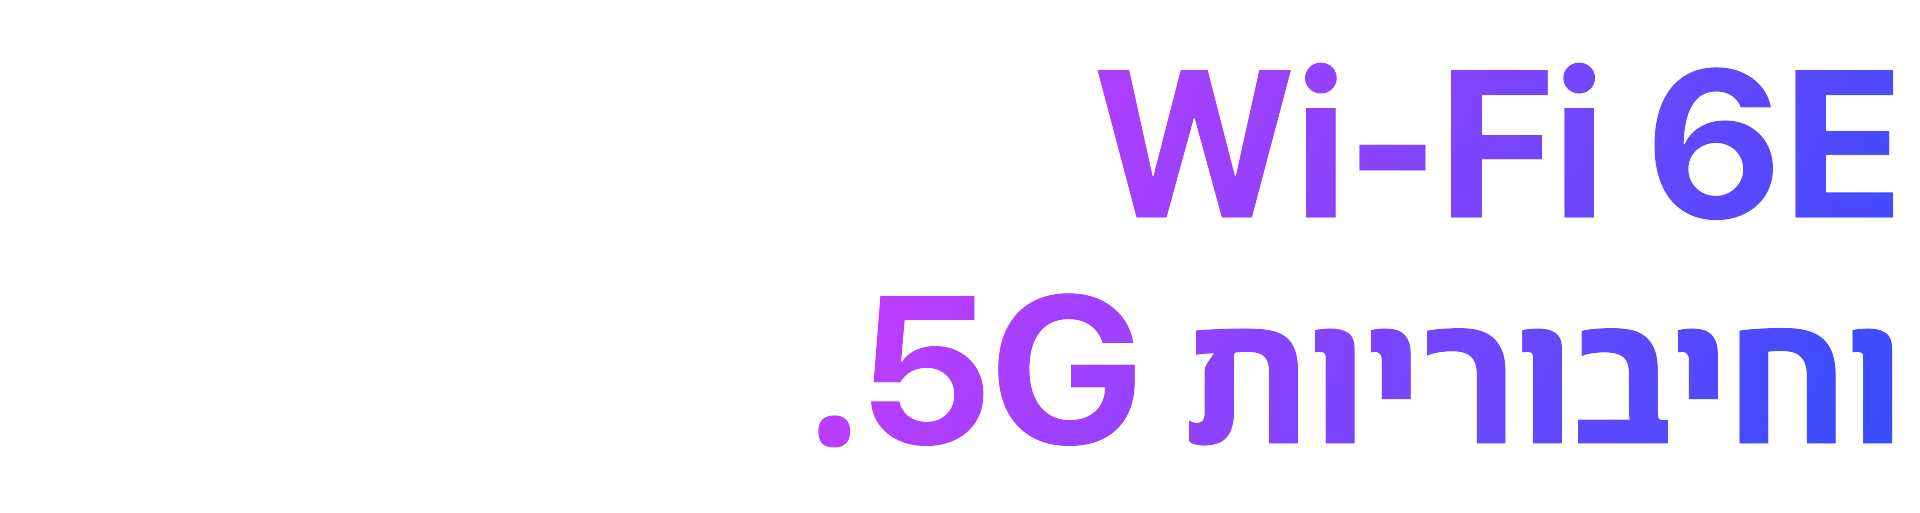 Wi-Fi 6E וחיבוריות 5G